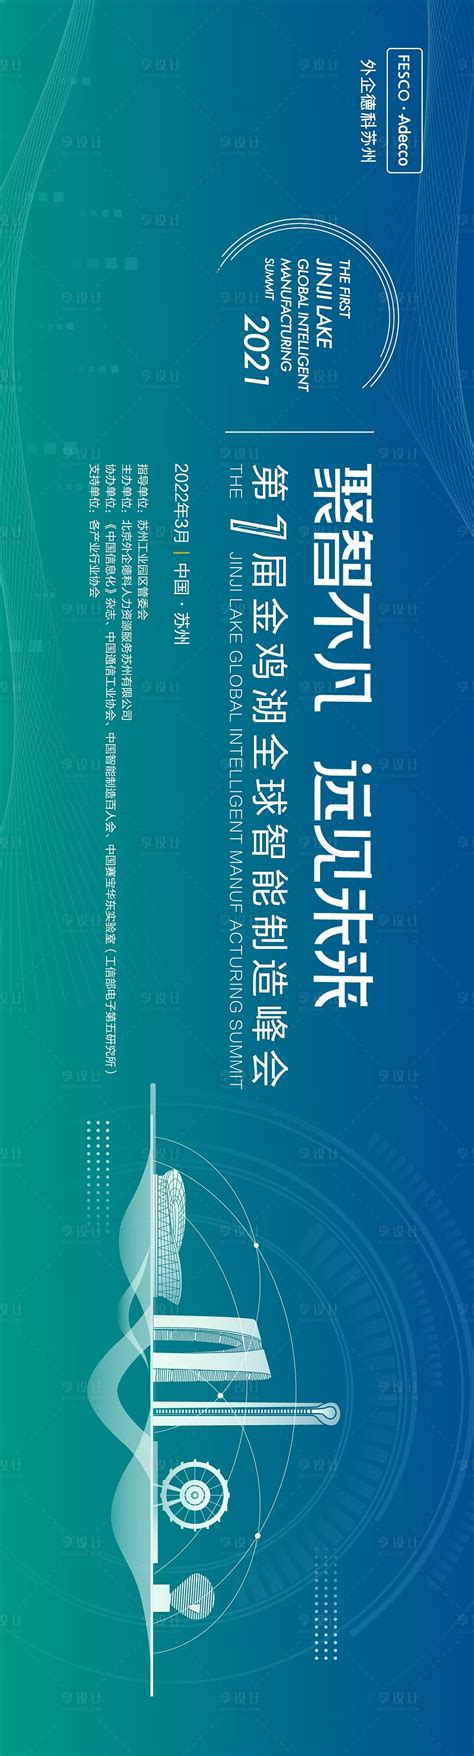 苏州发布人工智能标准化发展报告与标准体系建设指南 - 苏州市市场监督管理局